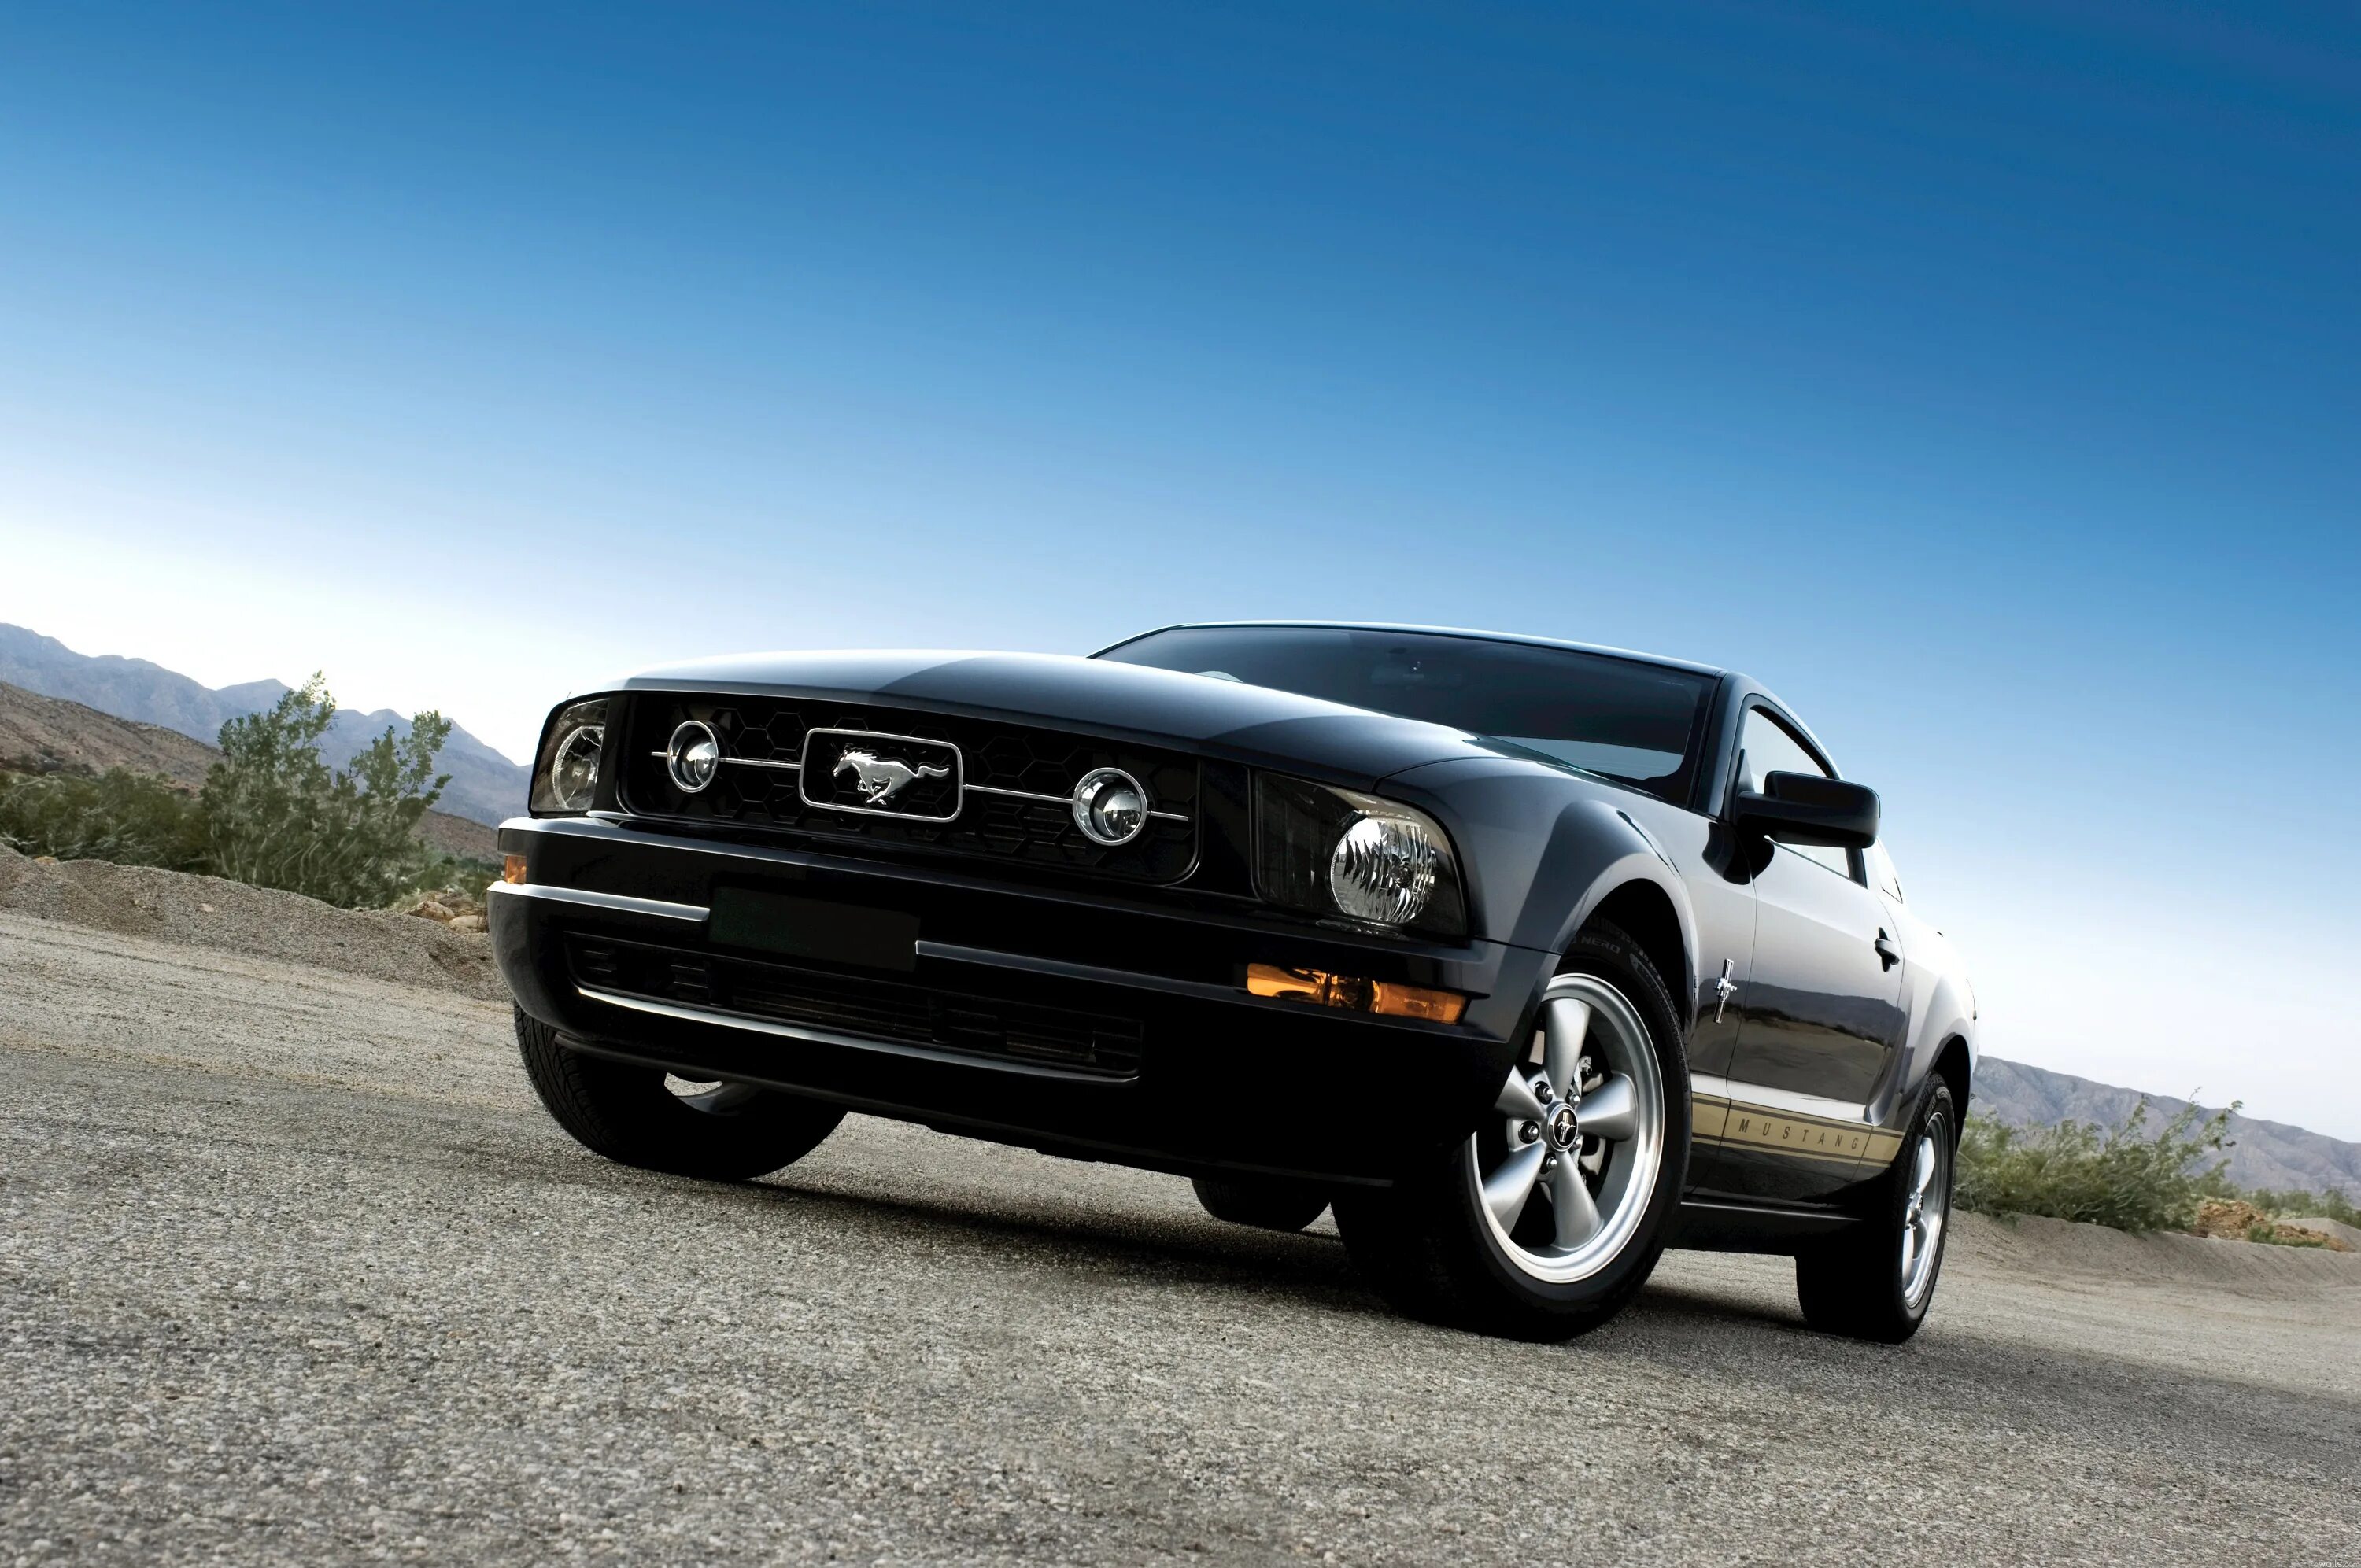 600 1024 8. Форд Мустанг 2005. Ford Mustang 2005 Black. Форд Мустанг 8. Форд Мустанг 2005 черный.